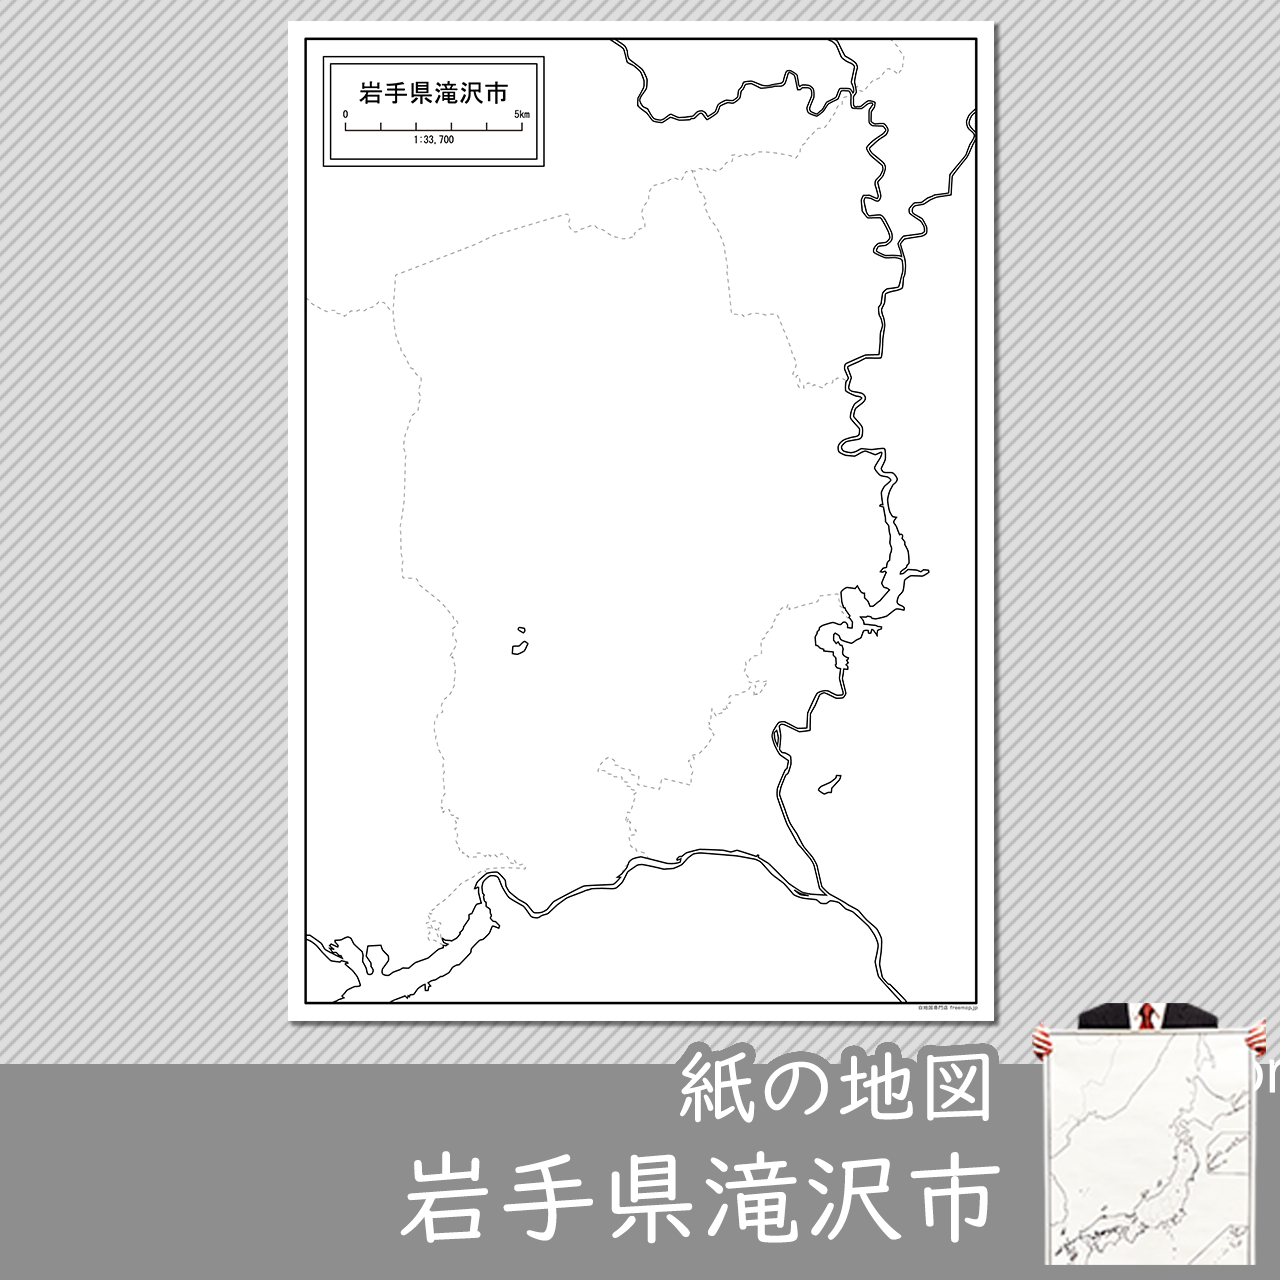 滝沢市の紙の白地図のサムネイル